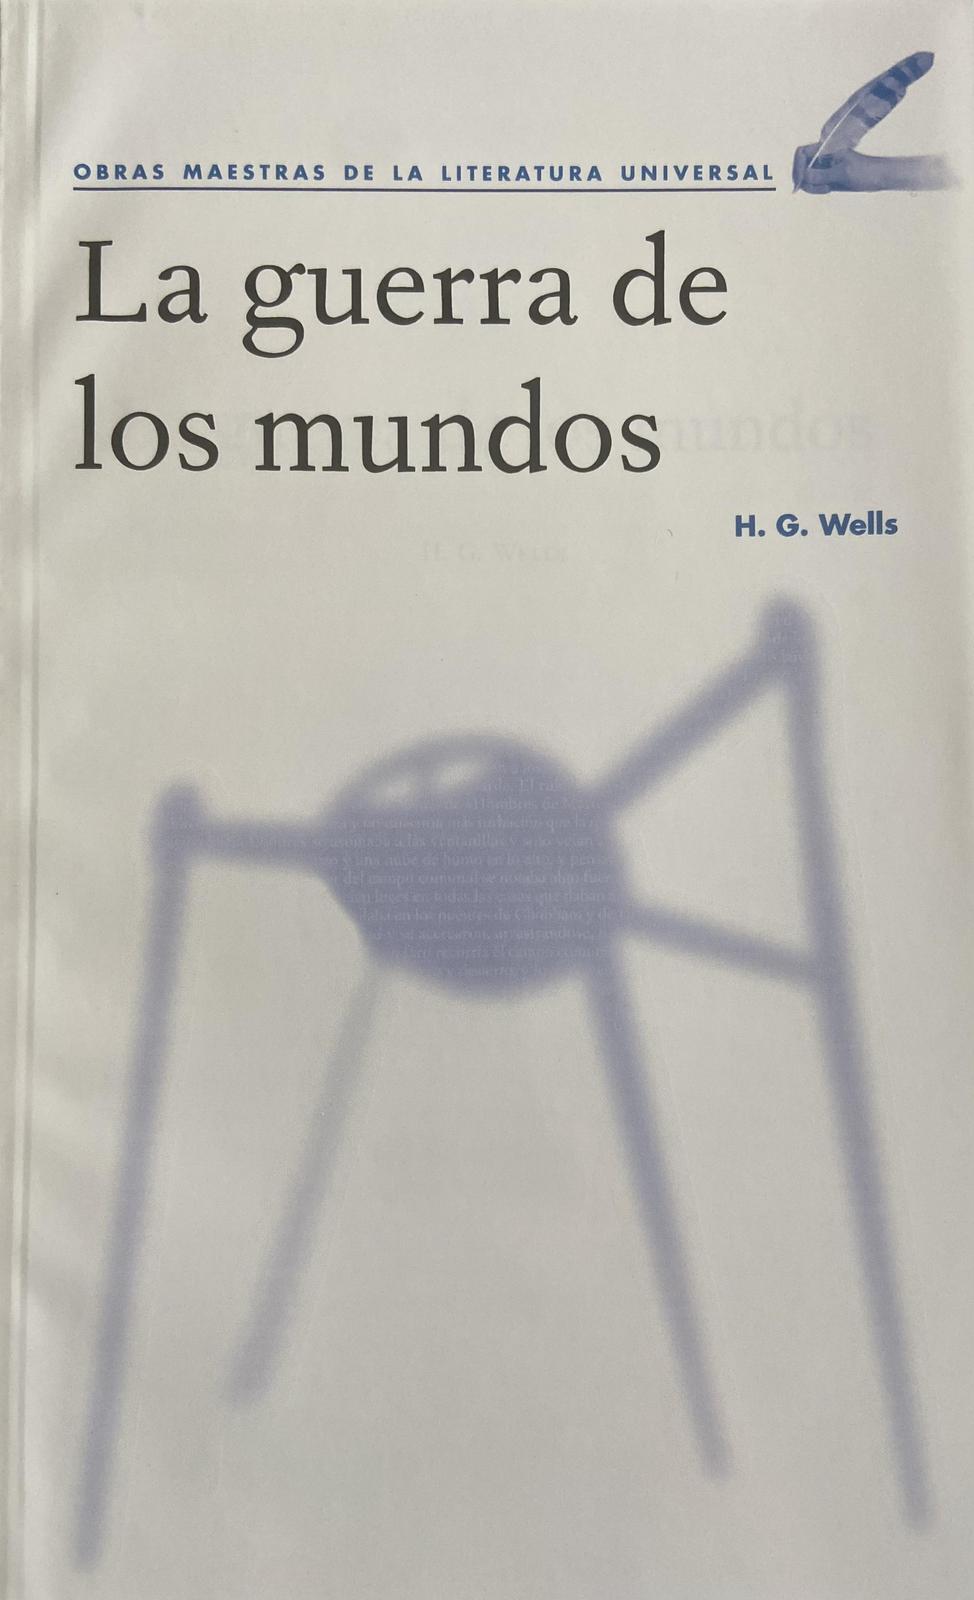 La guerra de los mundos (Spanish language, Agencia Promotora de Publicaciones, S.A. de C.V.)